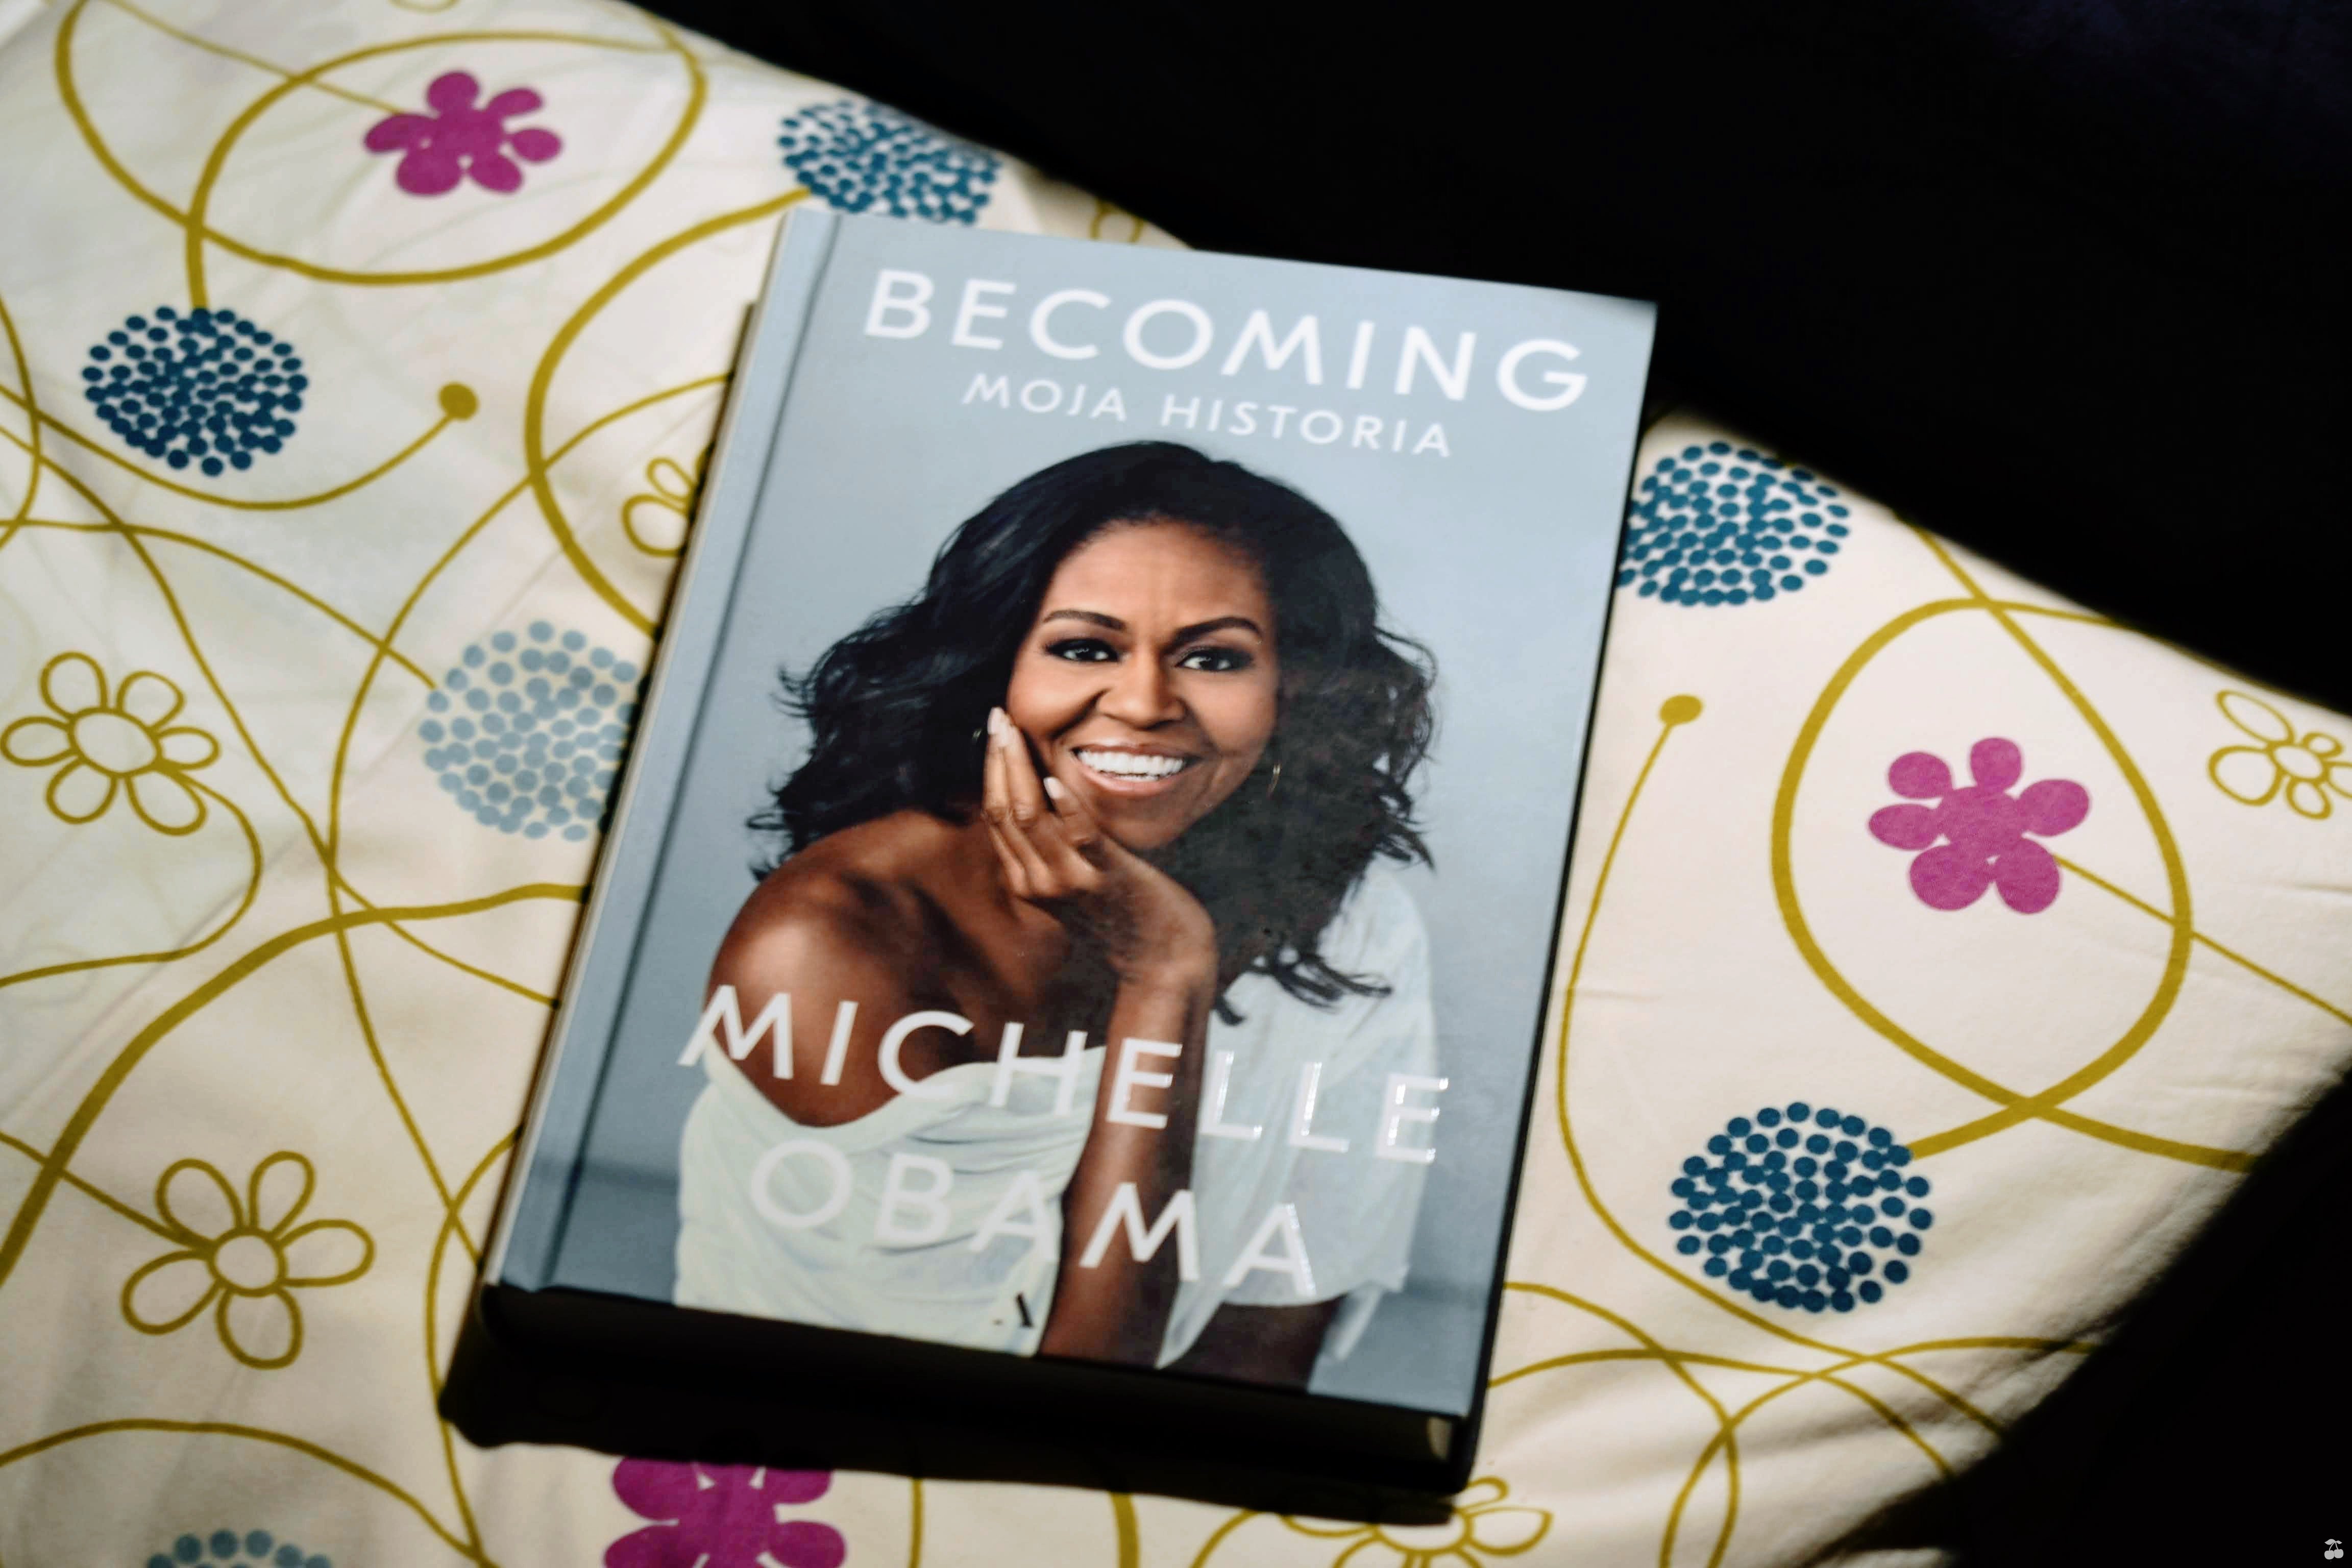 Michelle Obama: Becoming. Moja historia.